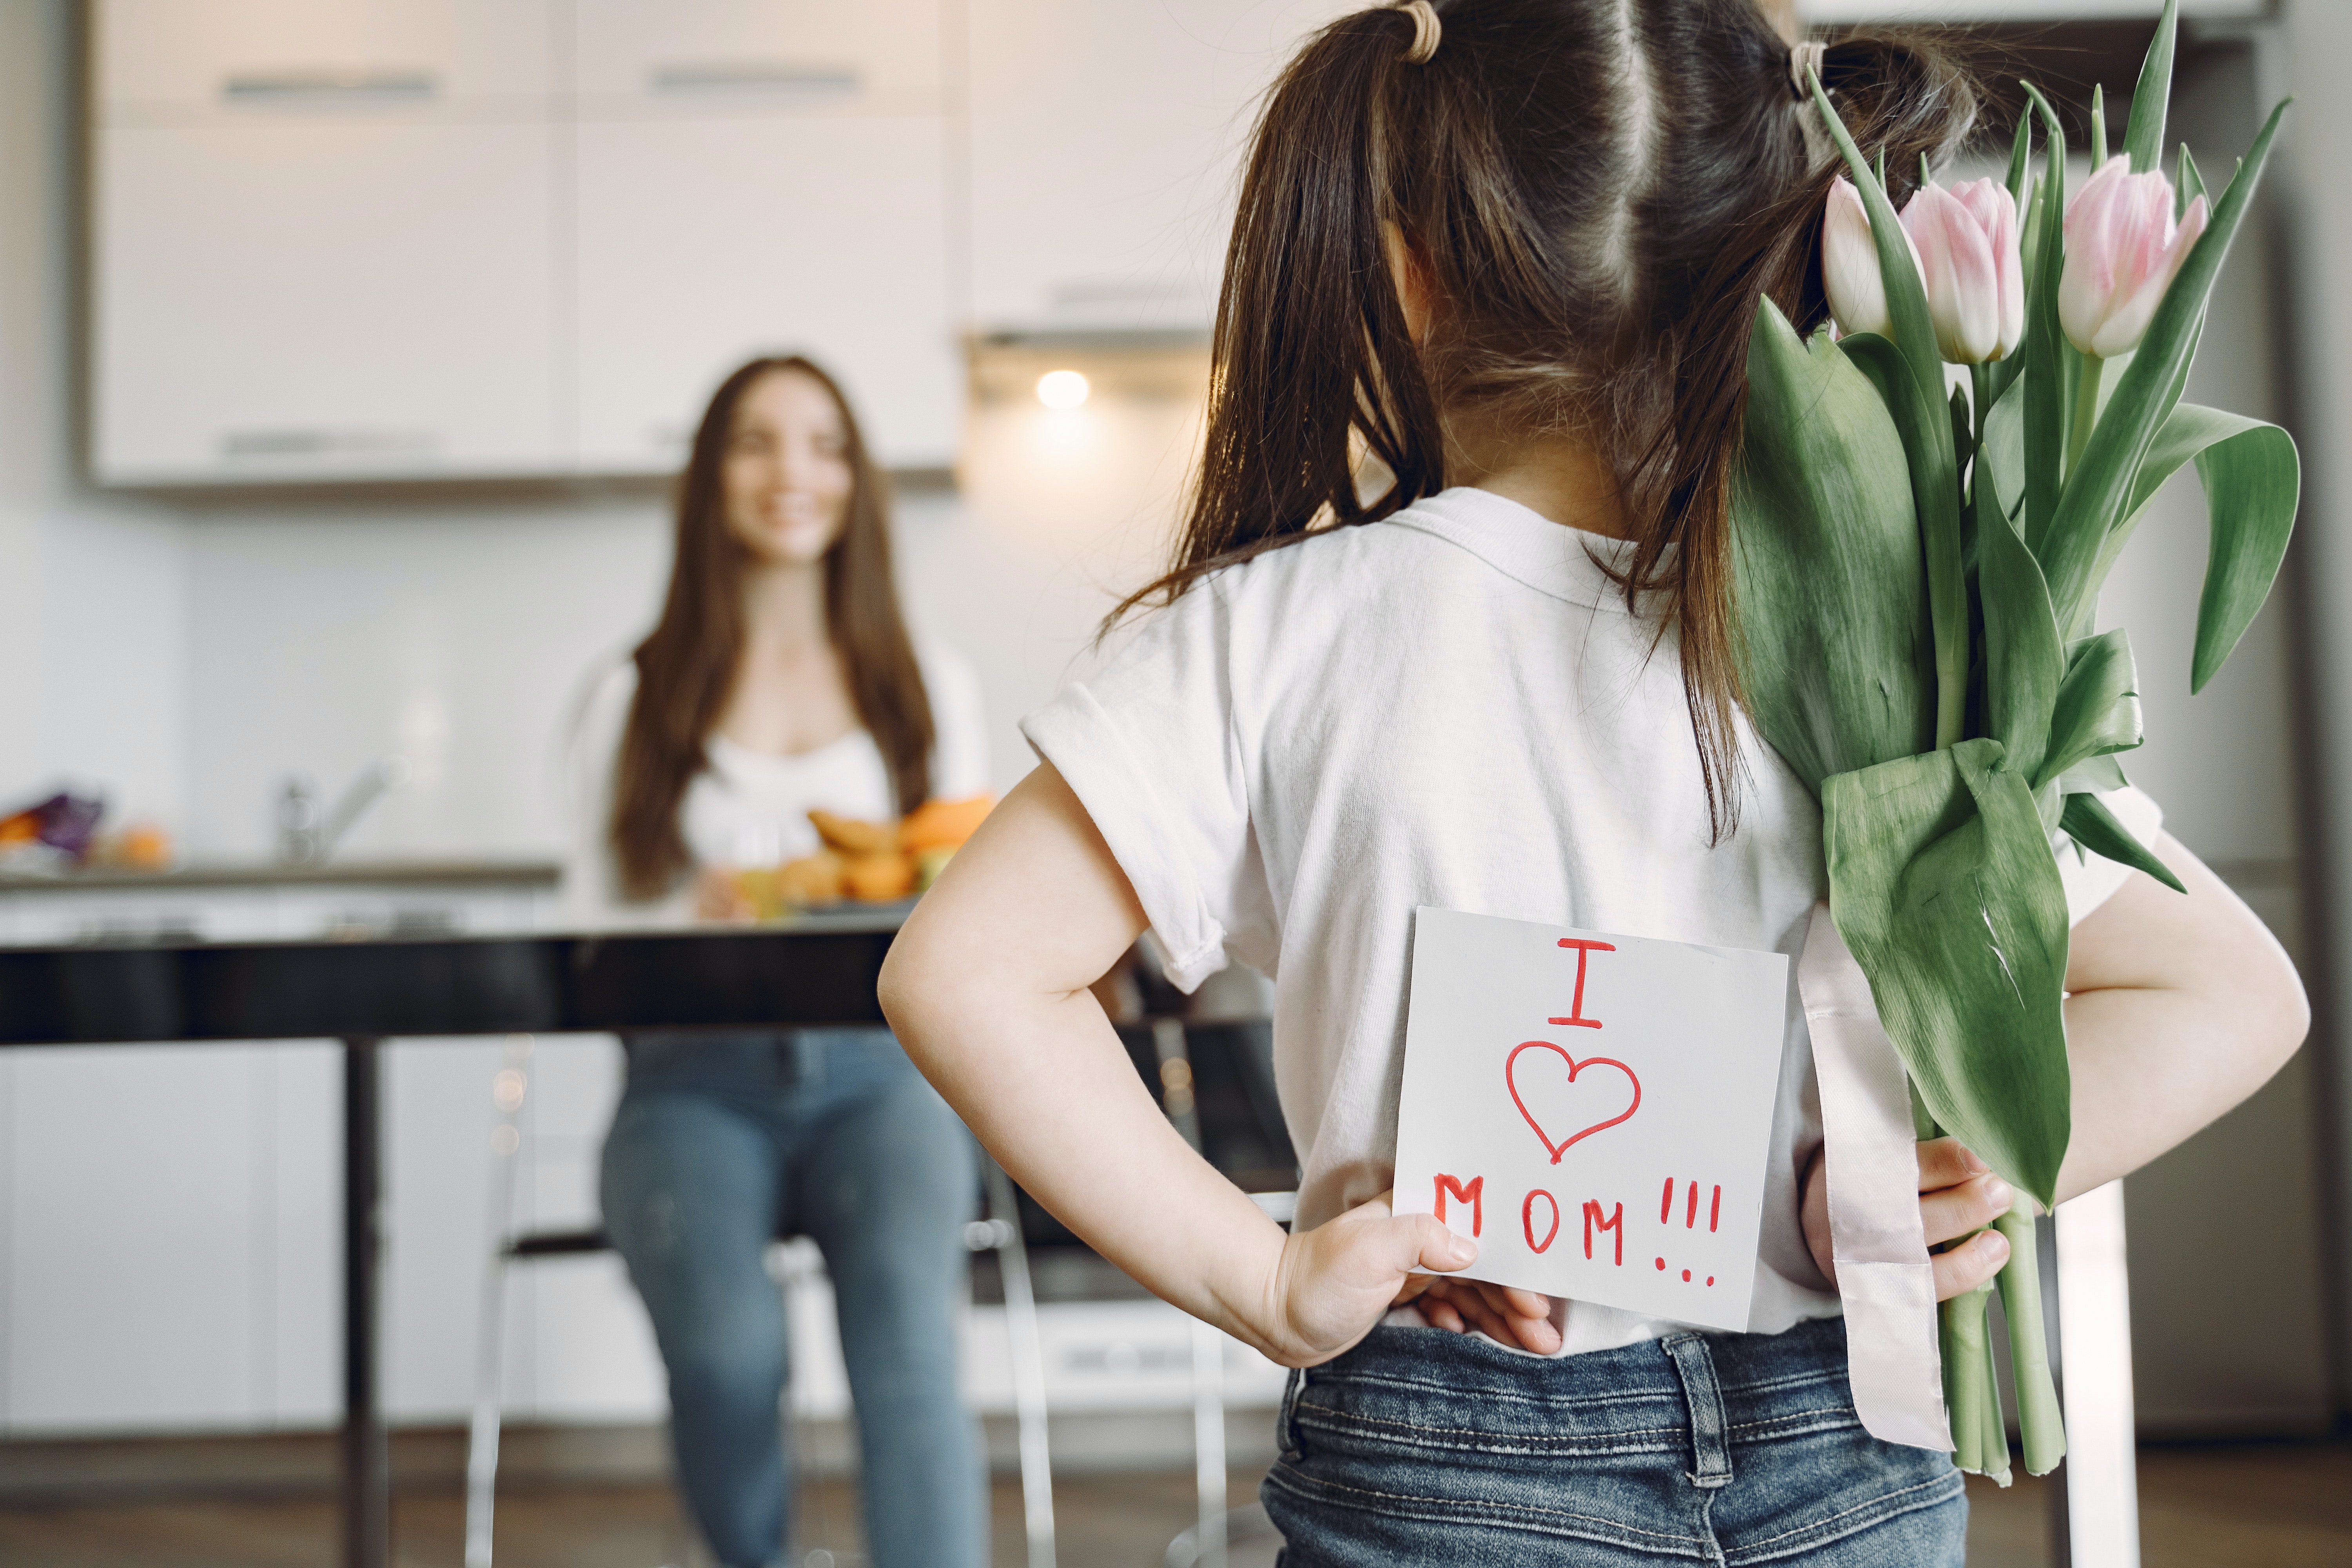 Los 10 mejores regalos para el Día de la Madre – Blog Curiosite